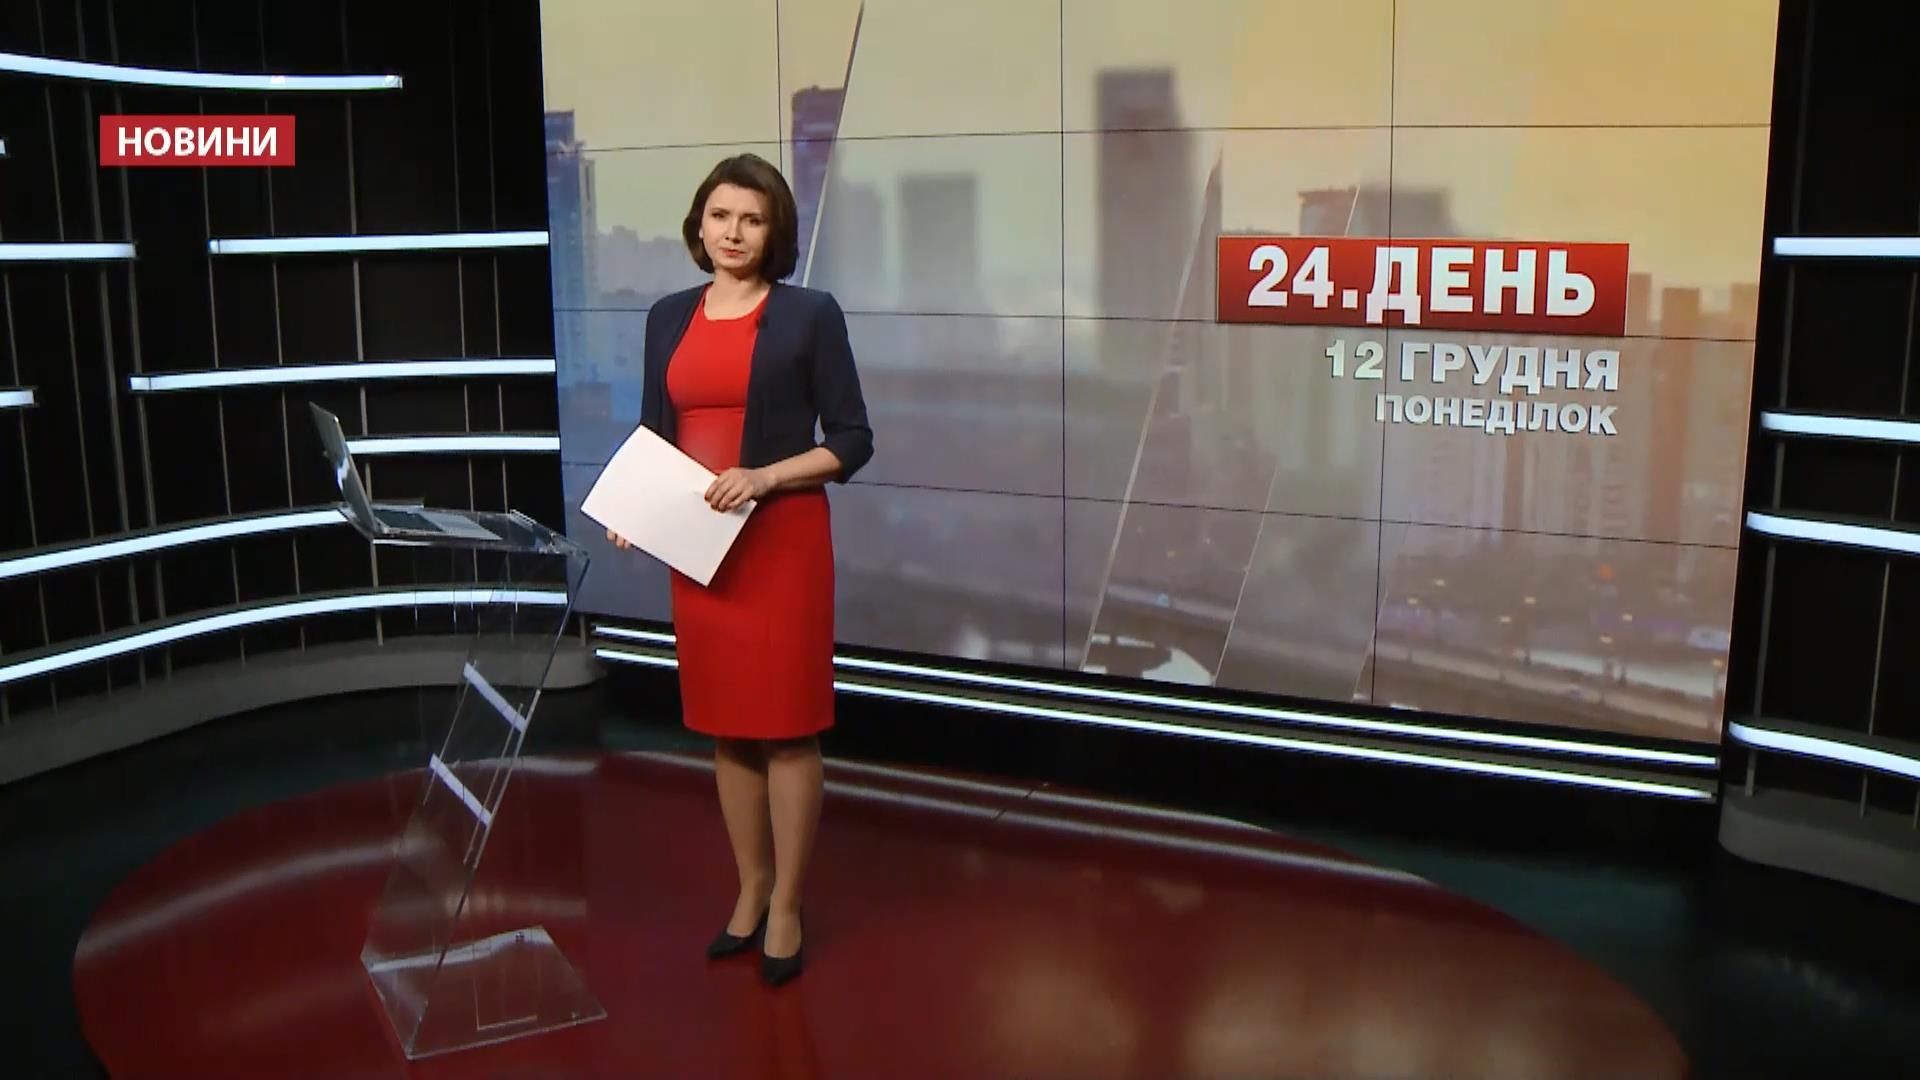 Выпуск новостей за 12:00 СБУ заинтересовалось Надеждой Савченко. Экс-беркутовец получил повышение